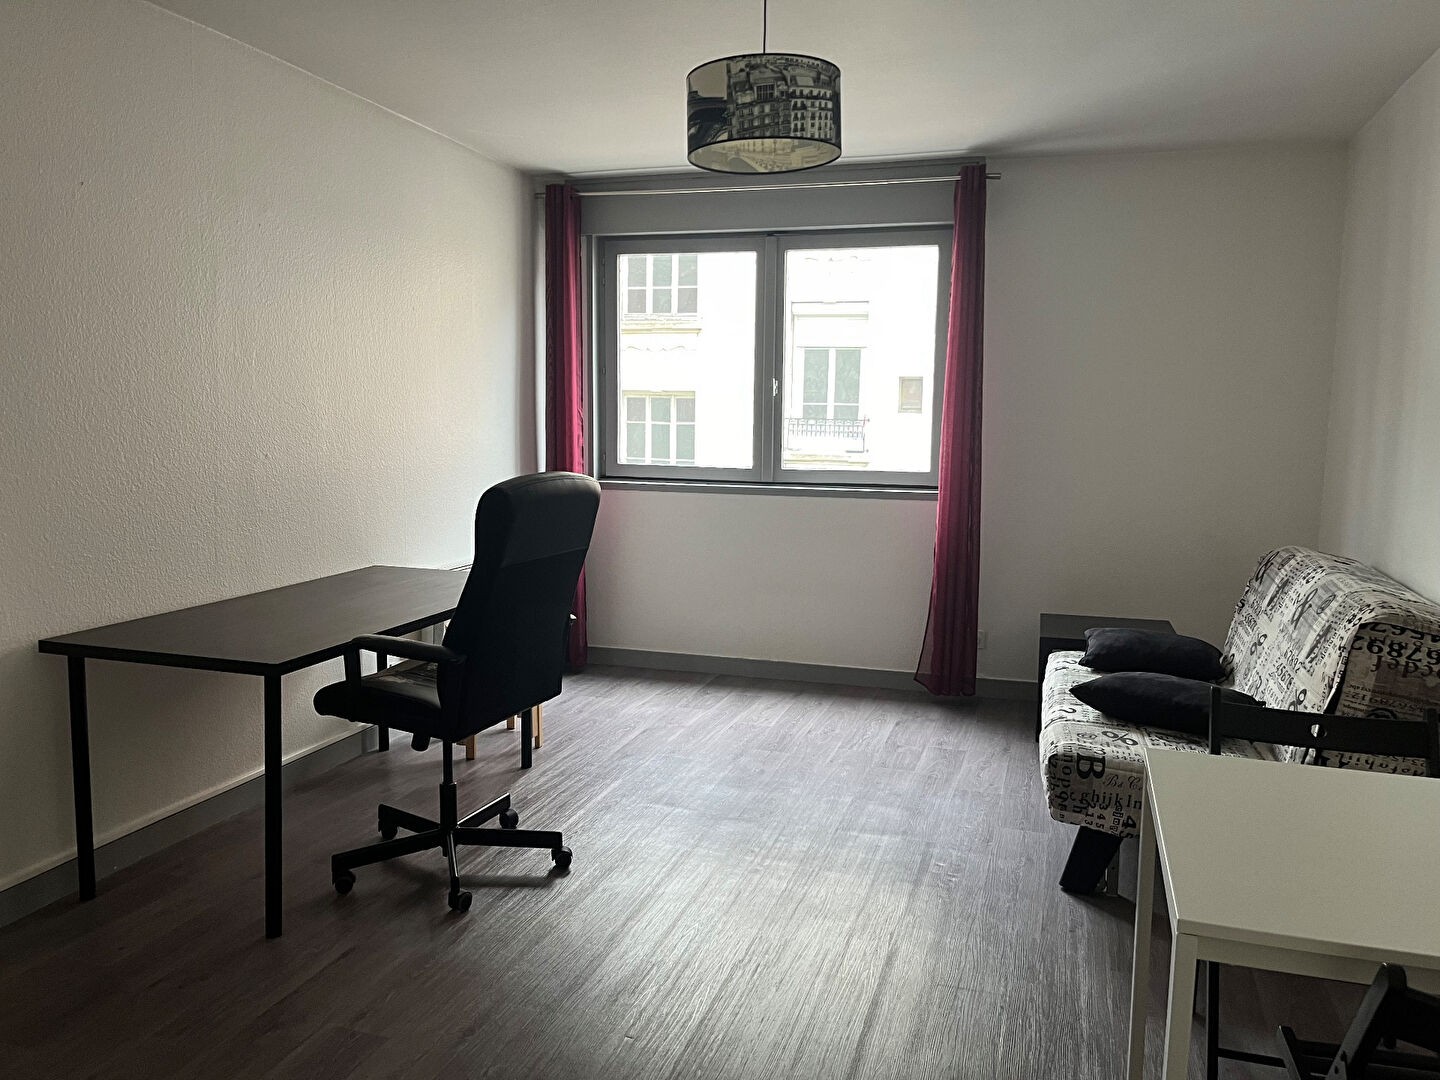 Location Appartement à Saint-Étienne 1 pièce